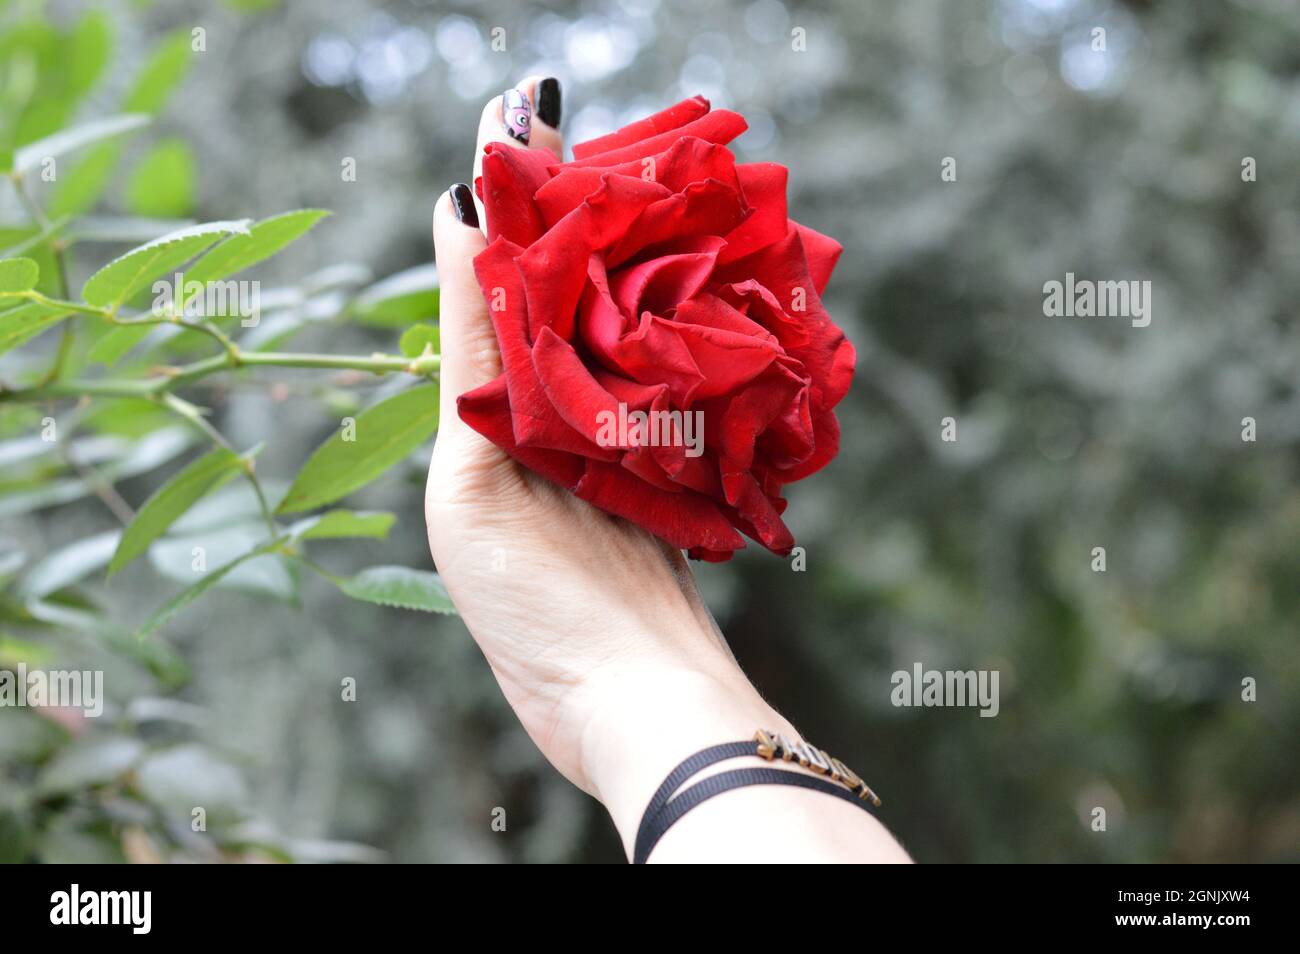 Belle rose rouge pleine fleur sur la main d'une dame avec vernis à ongles noir et bracelet, prise dans le jardin par les Bays Singapore Banque D'Images